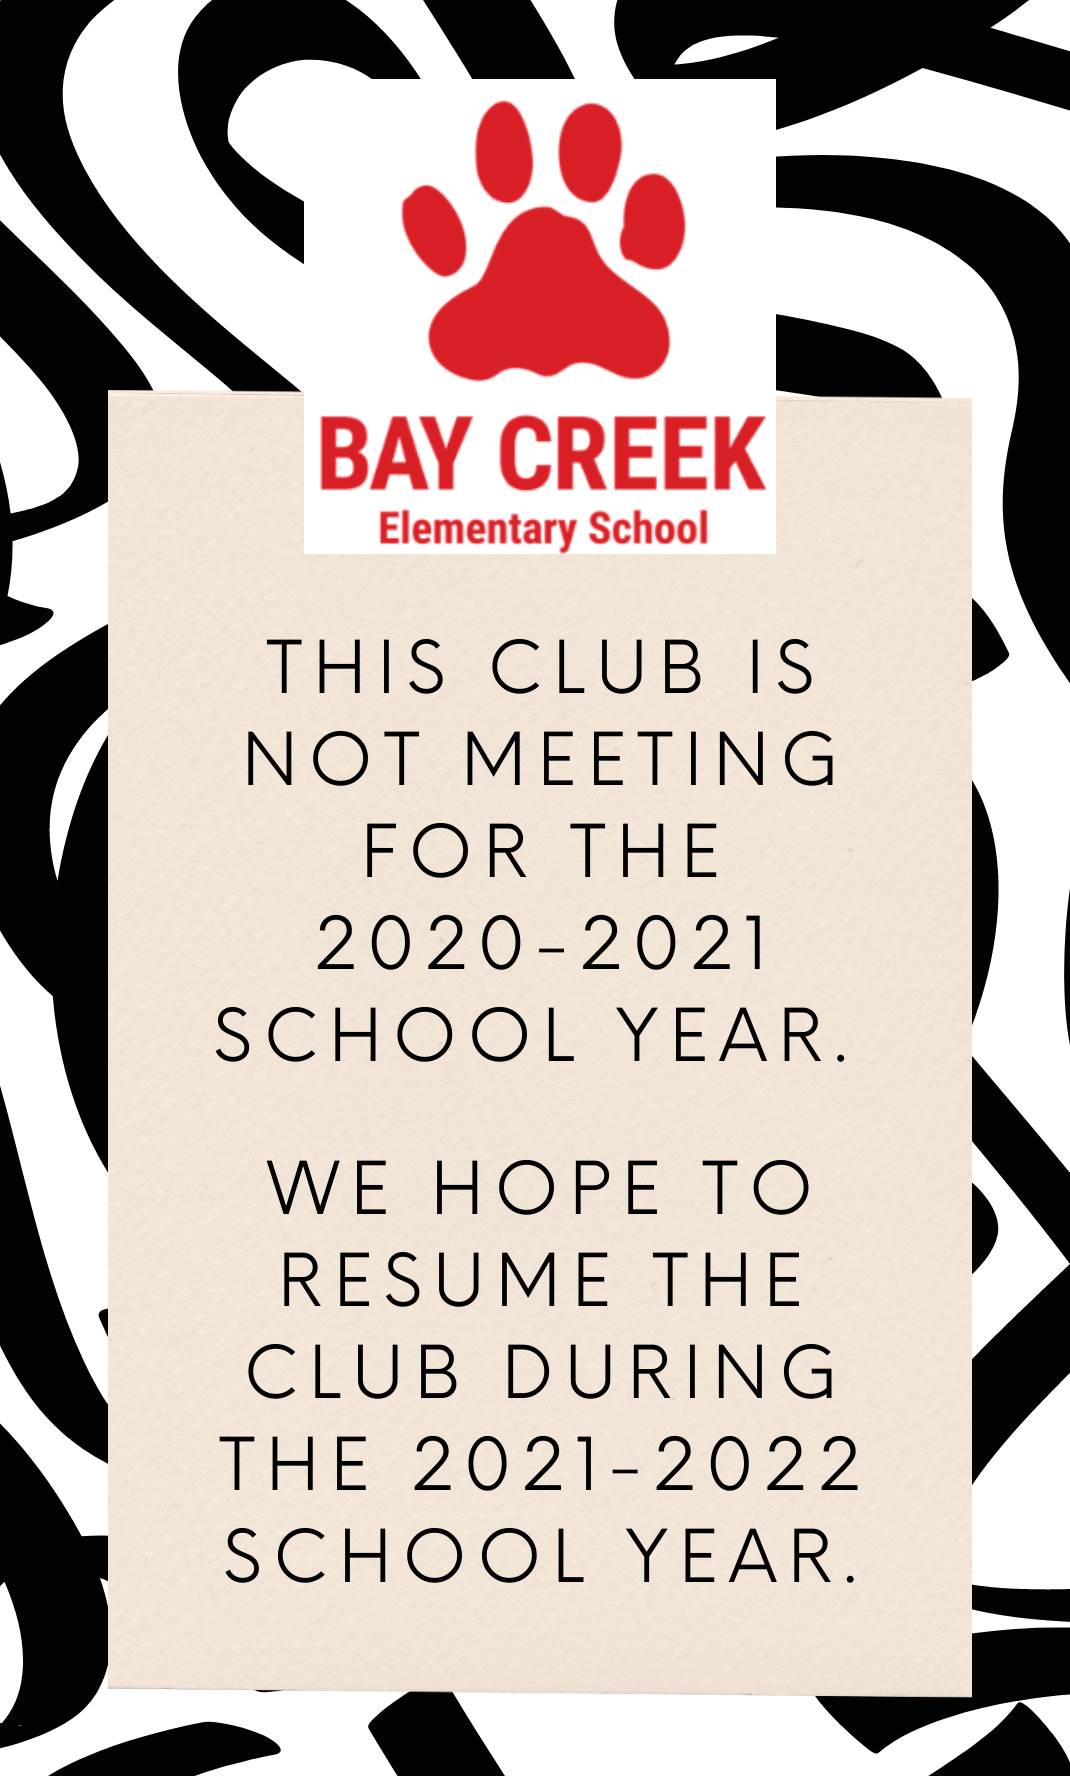 Club not meeting